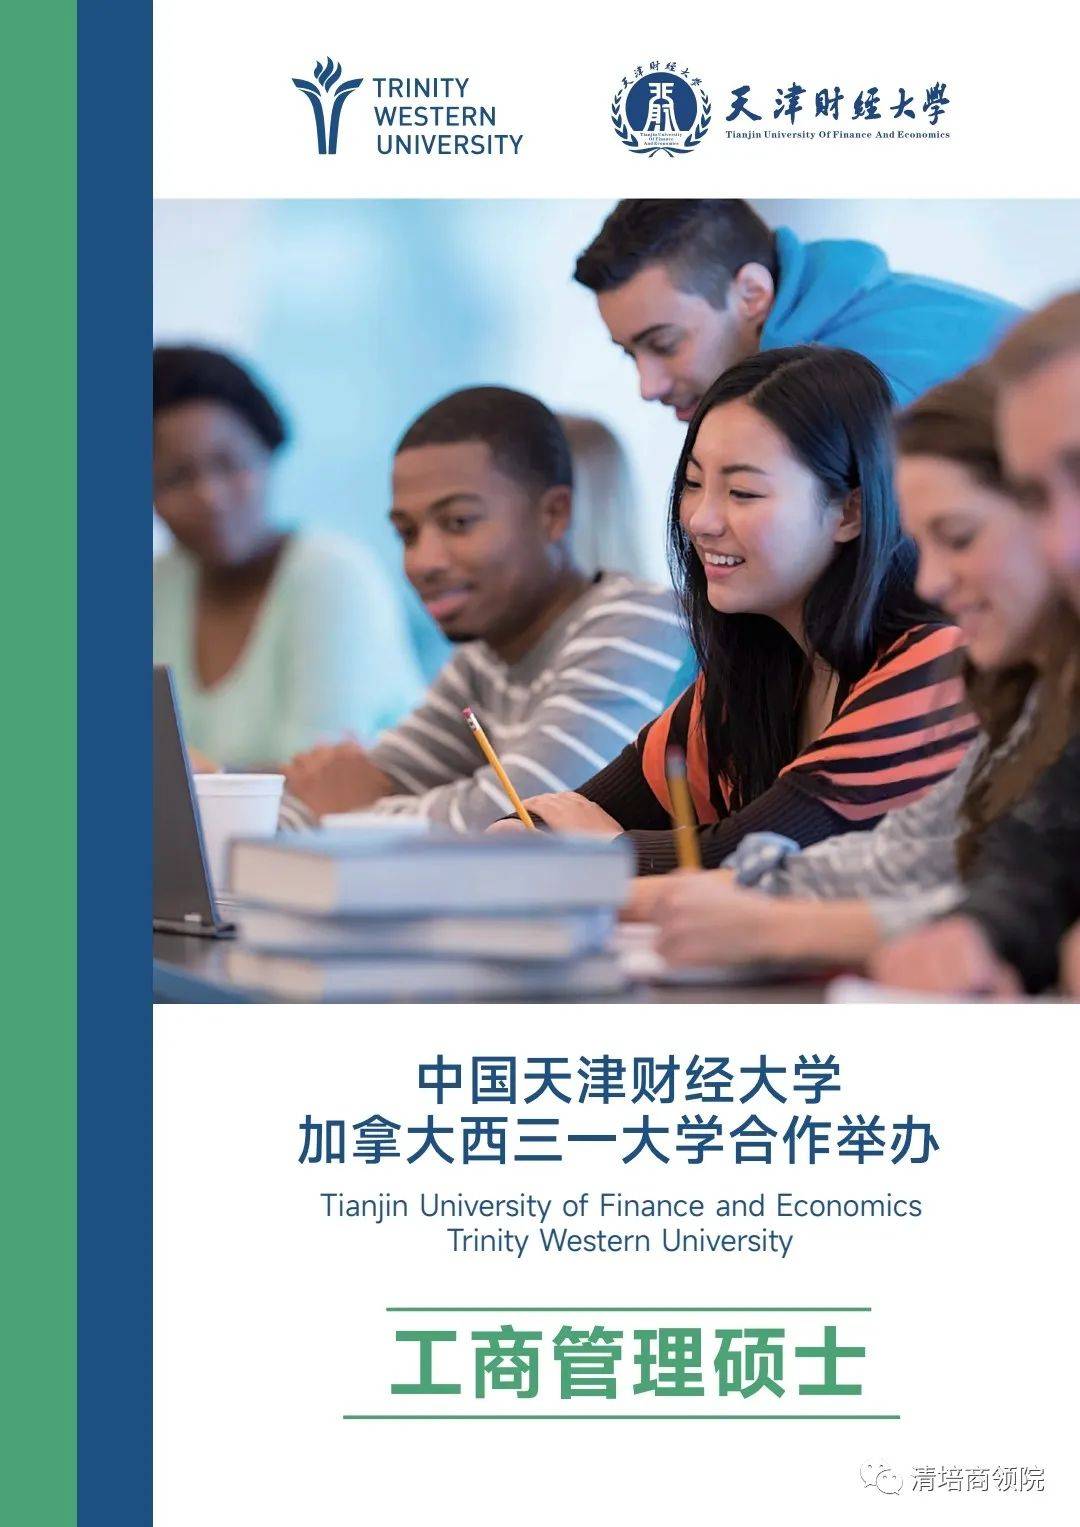 中国天津22选5
大学加拿大西三一大学合作举办工商管理硕士课程设置